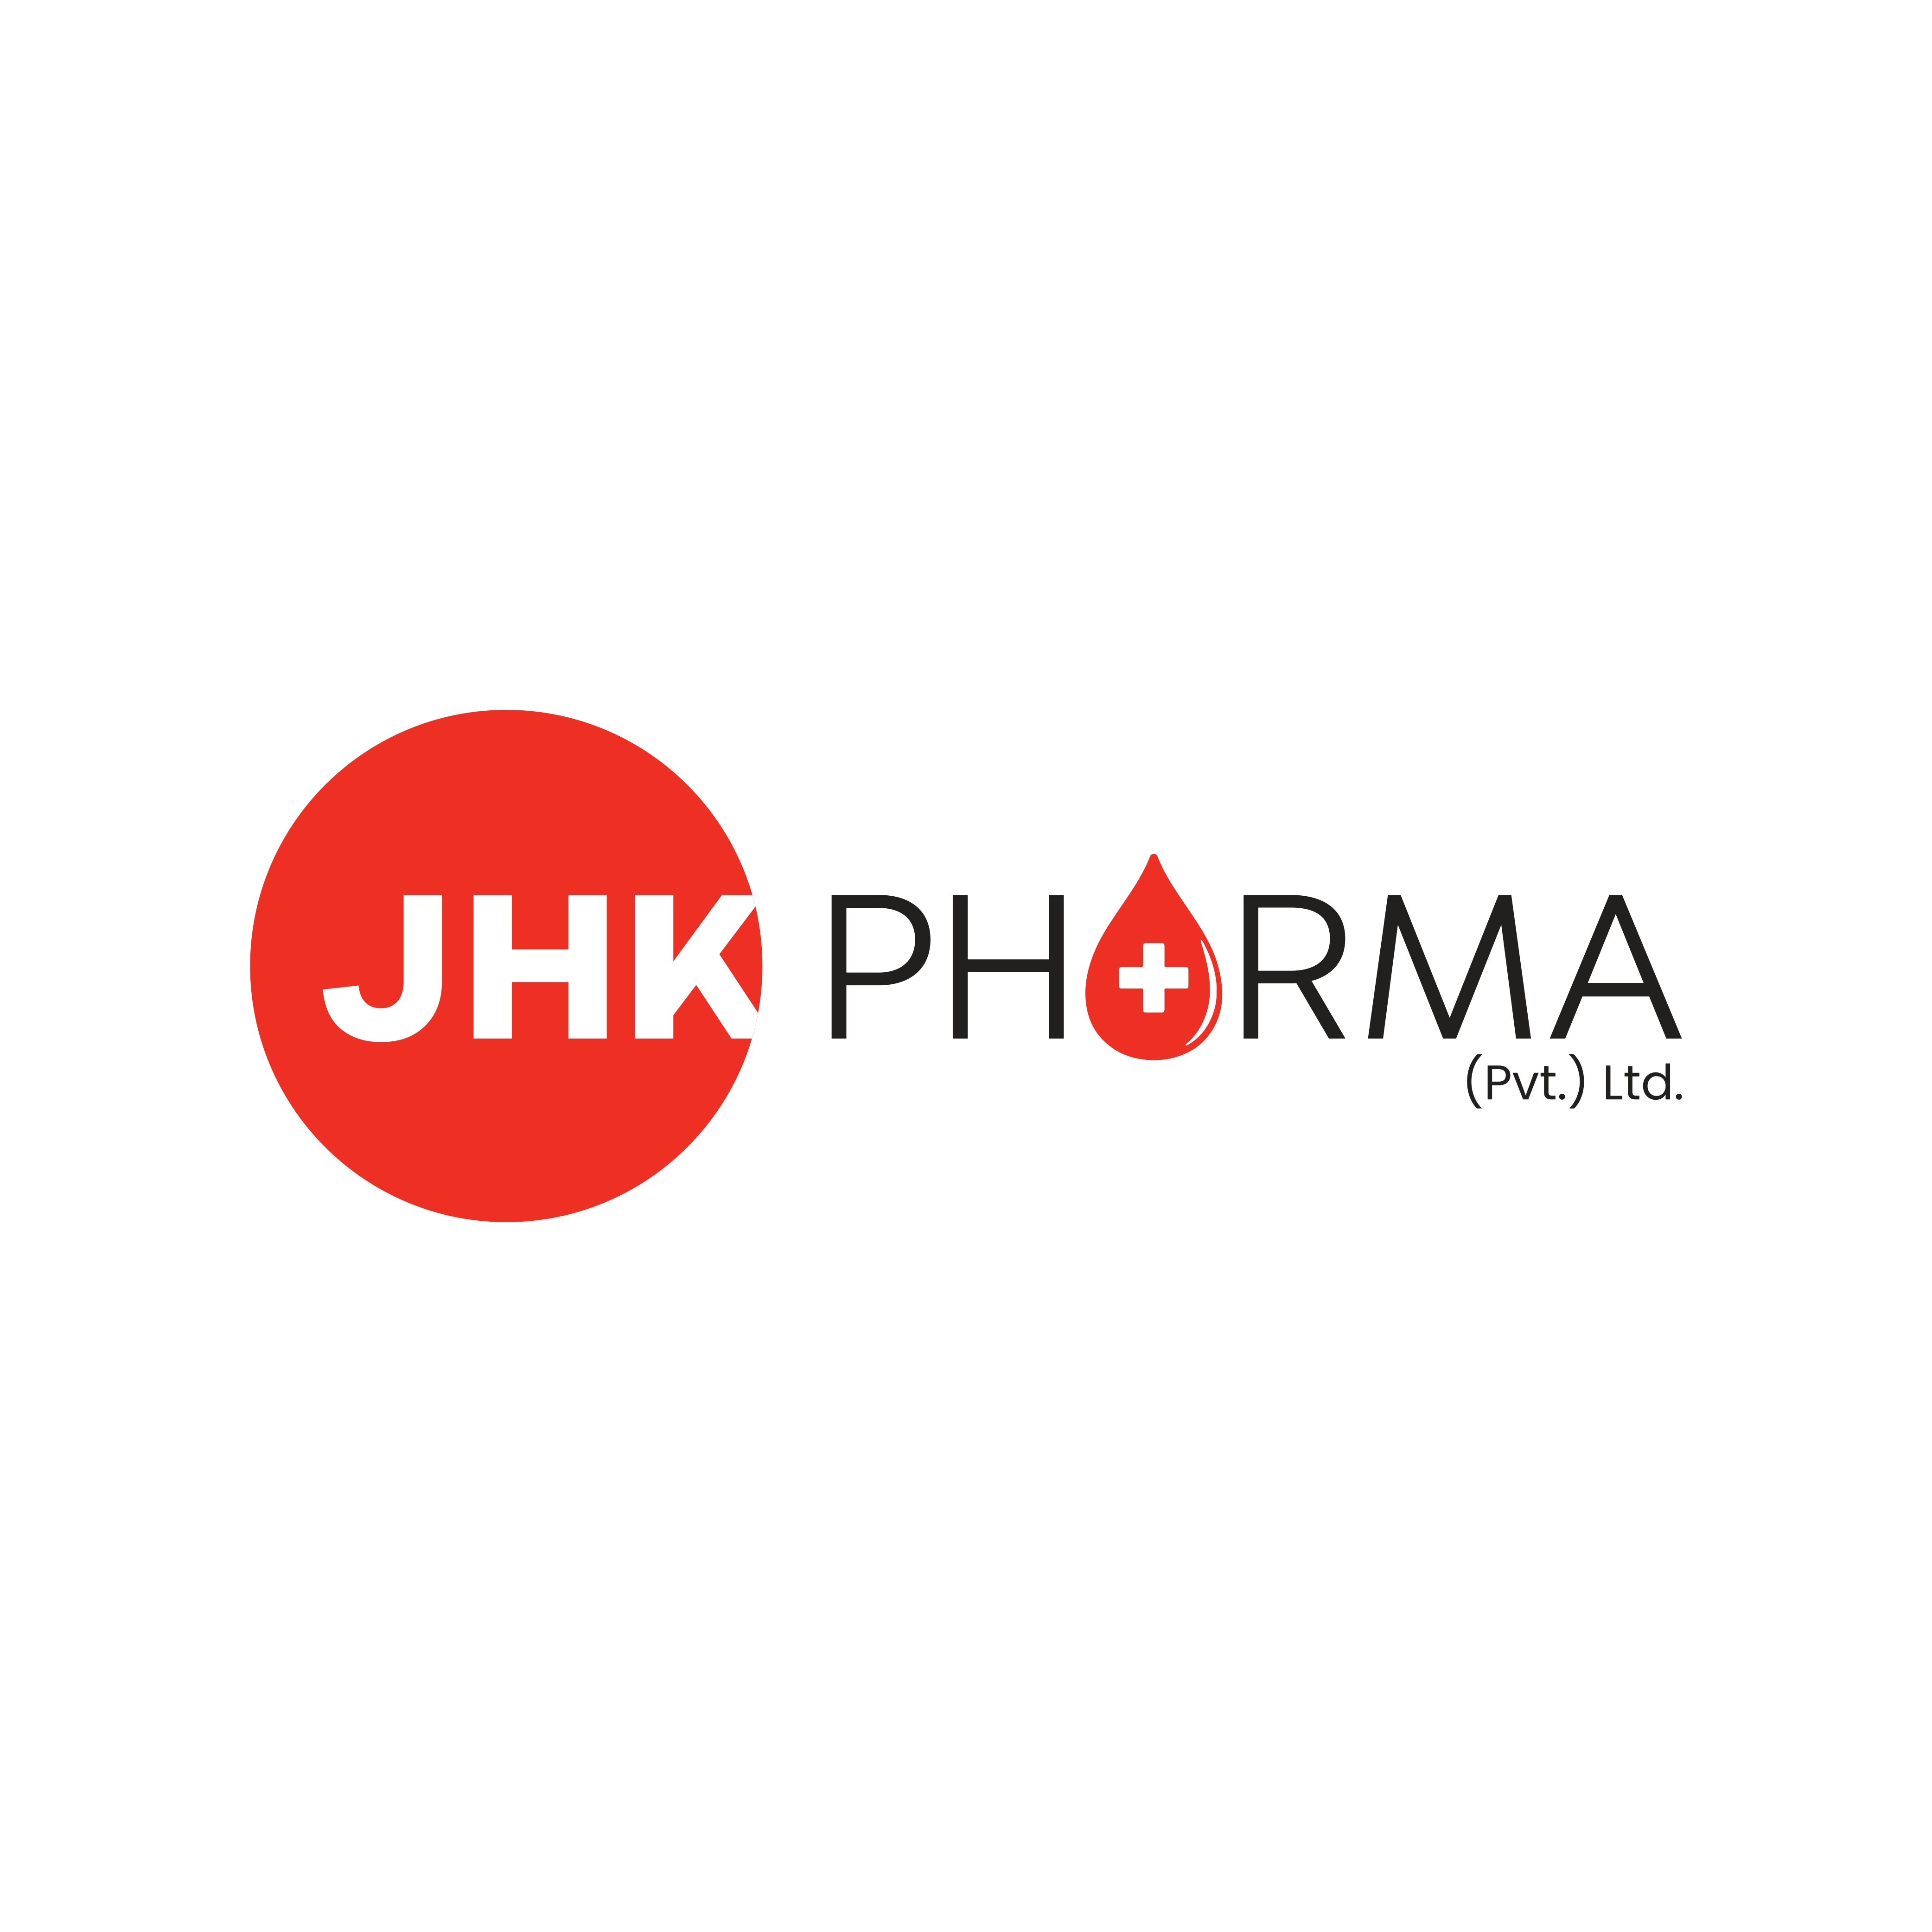 JHK Pharma (Pvt) Ltd